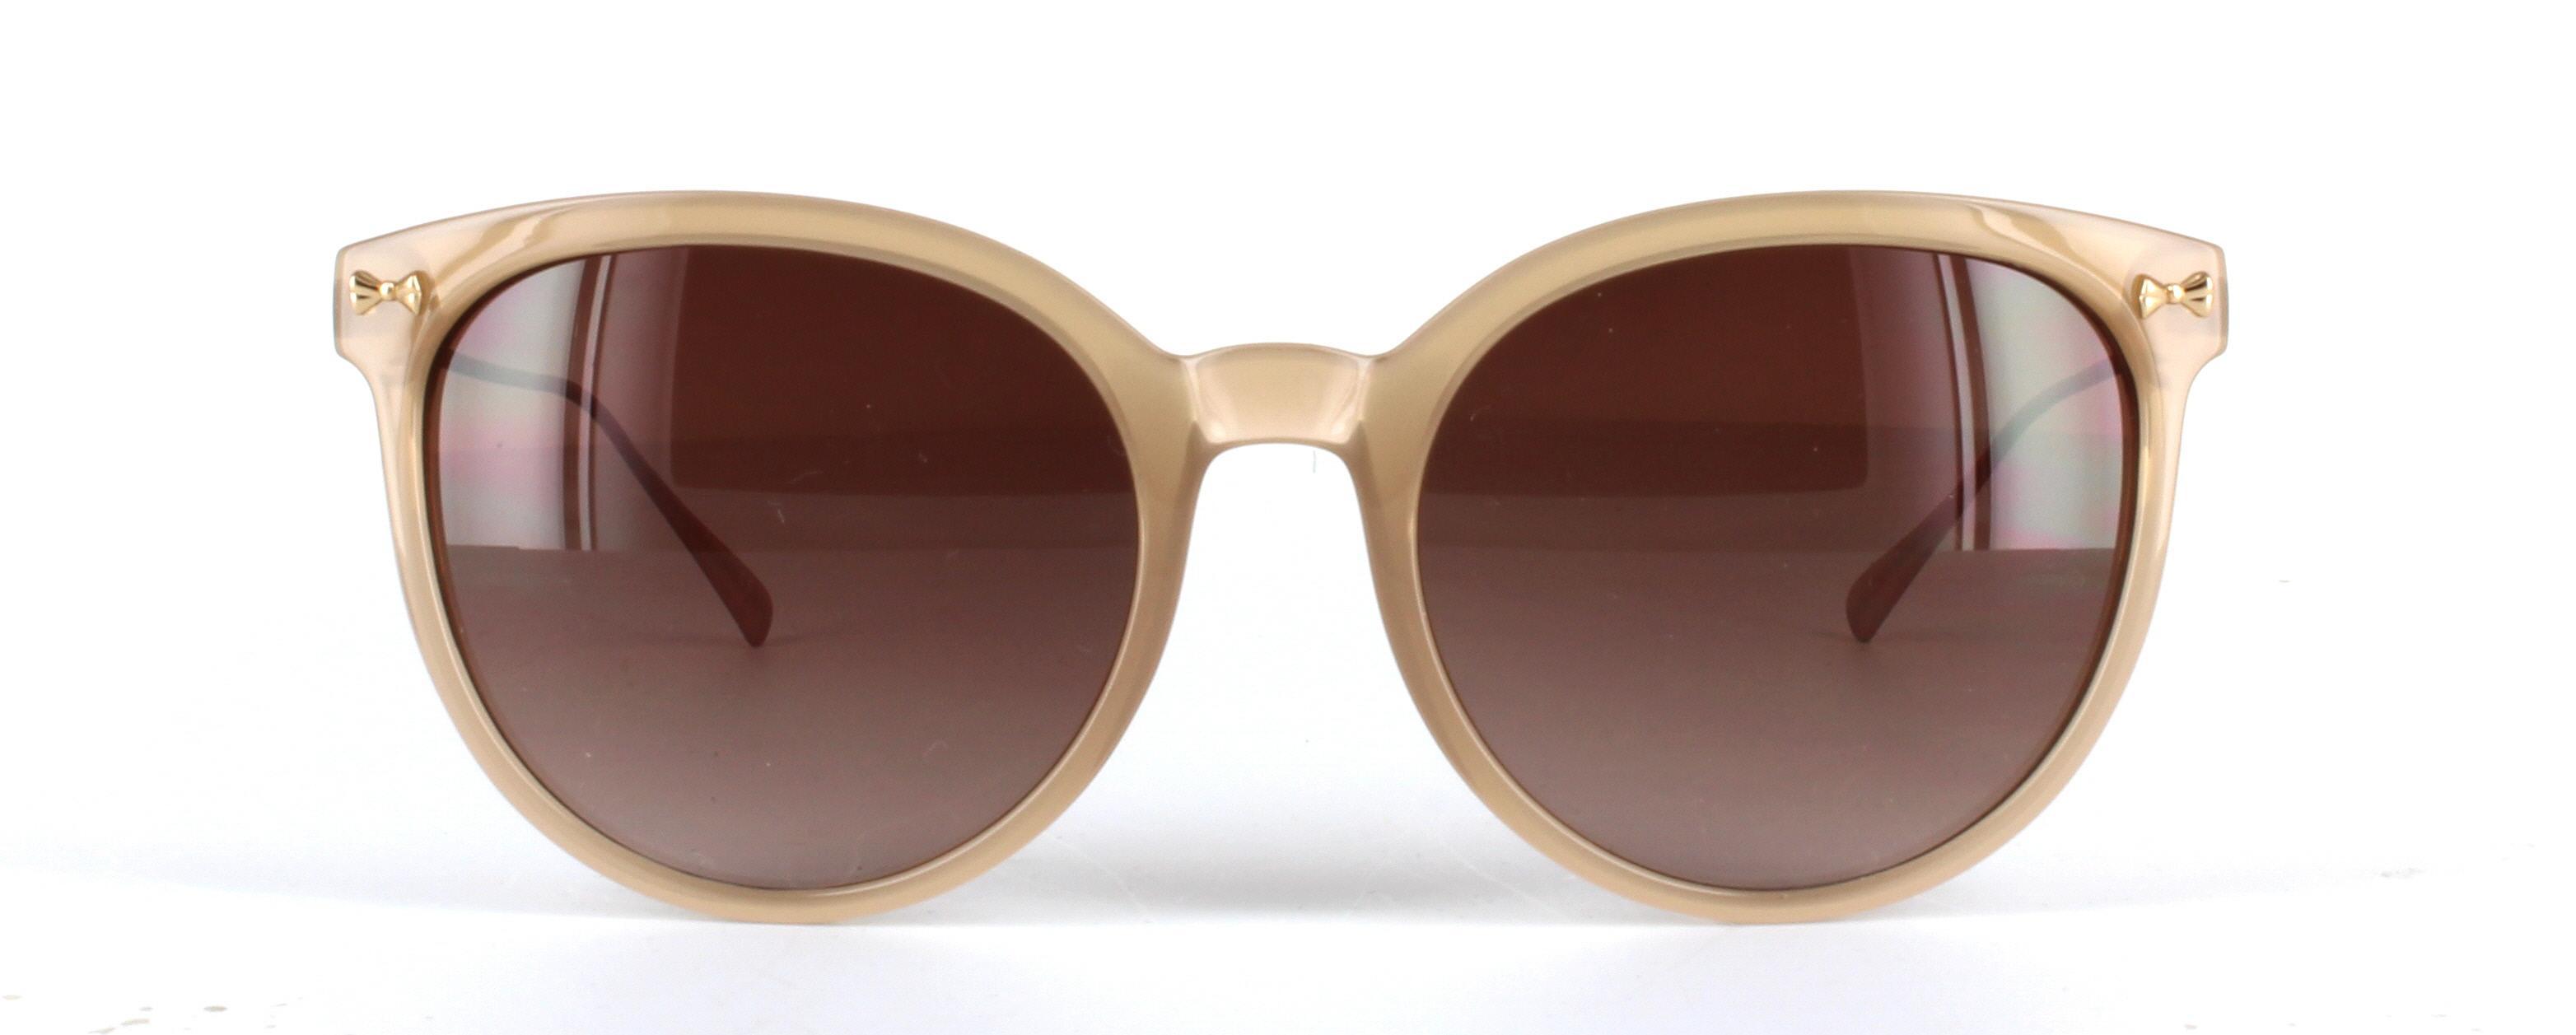 Ted Baker Maren Light Brown Full Rim Plastic Prescription Sunglasses - Image View 5